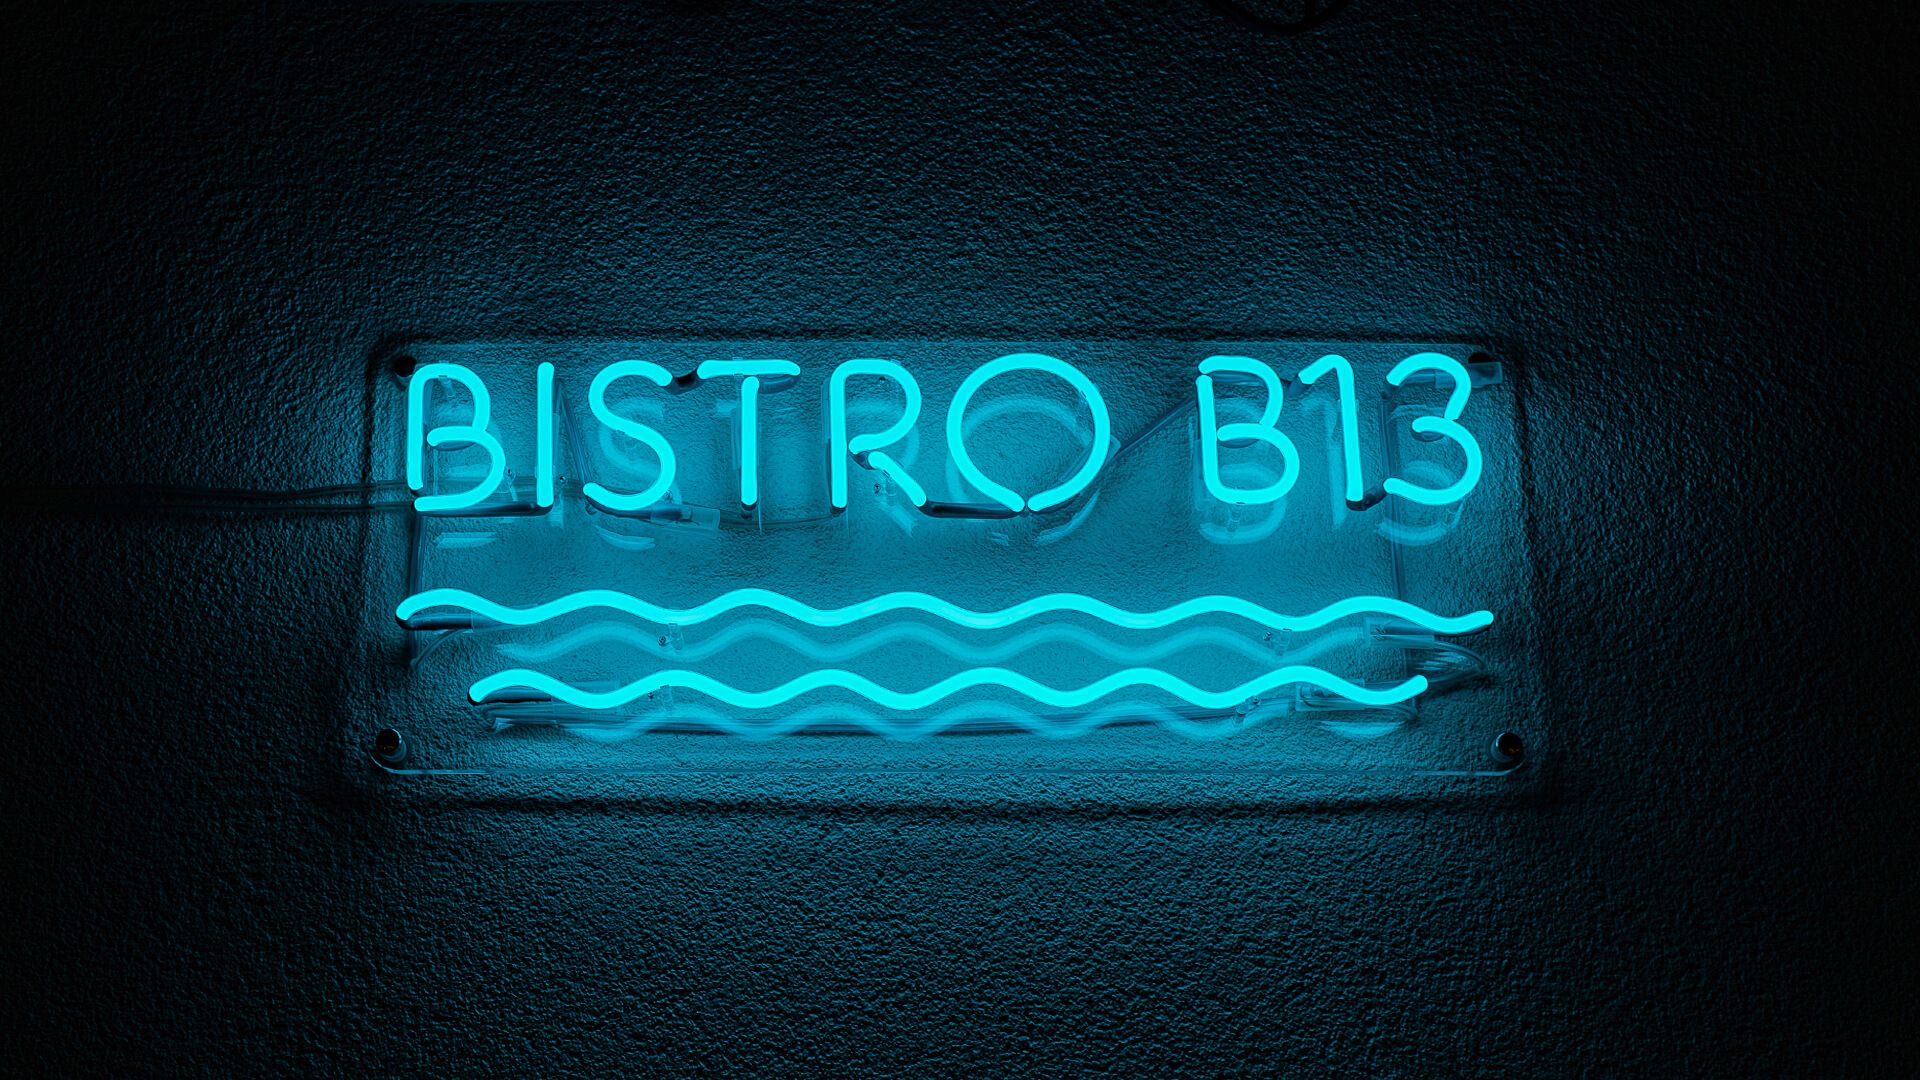 Bistro B13 - Enseigne lumineuse bleu bistrot, avec des vagues sous le lettrage.